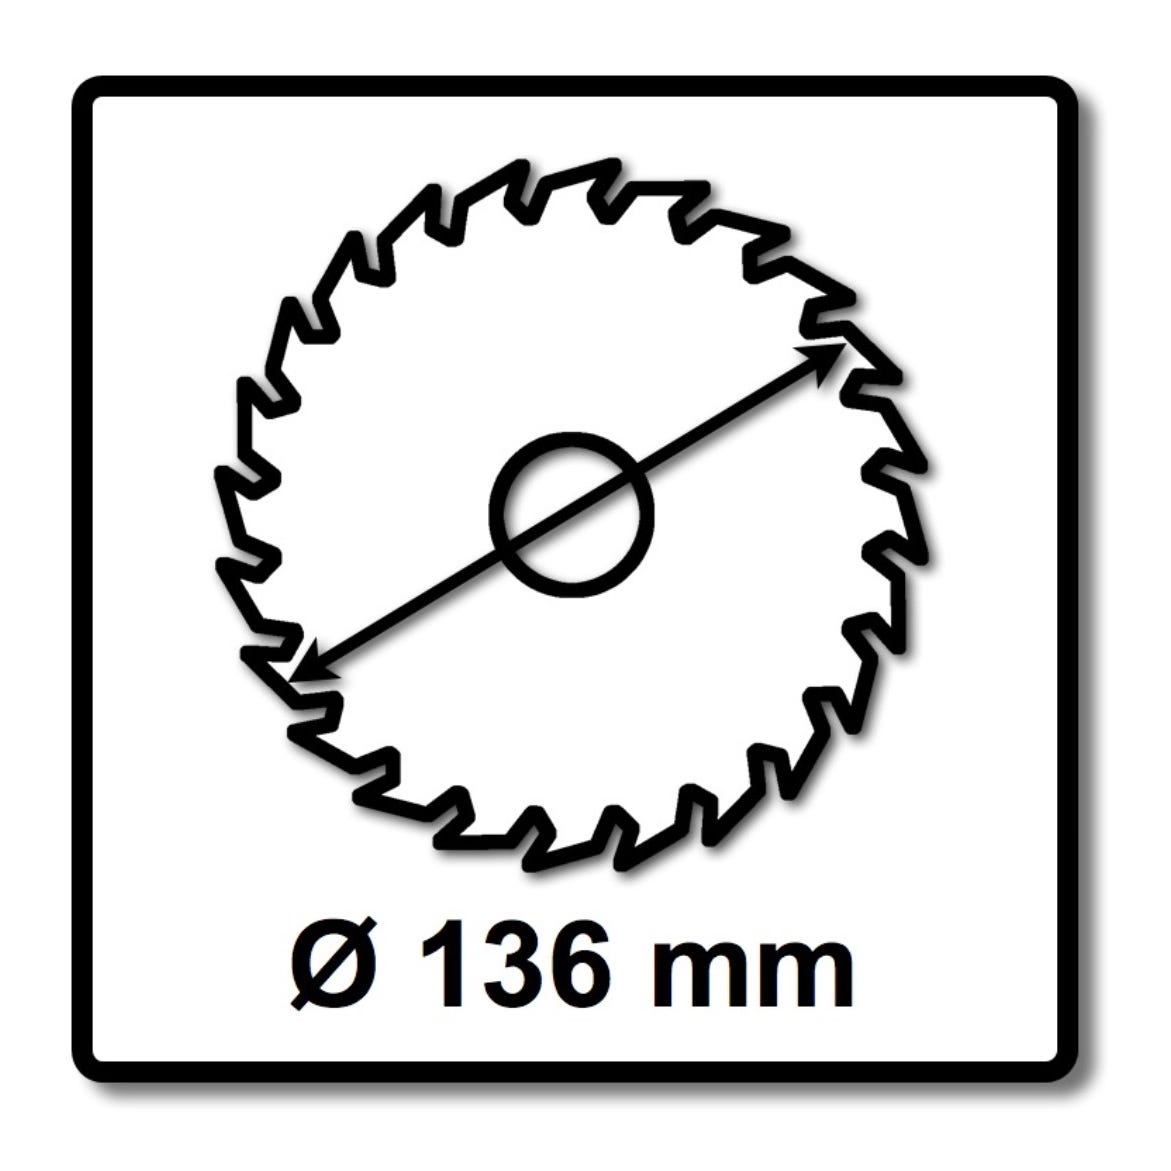 Bosch Lame de scie circulaire Standard pour bois 136 x 1,5 x 20 mm - 24 dents ( 2608837668 ) 1